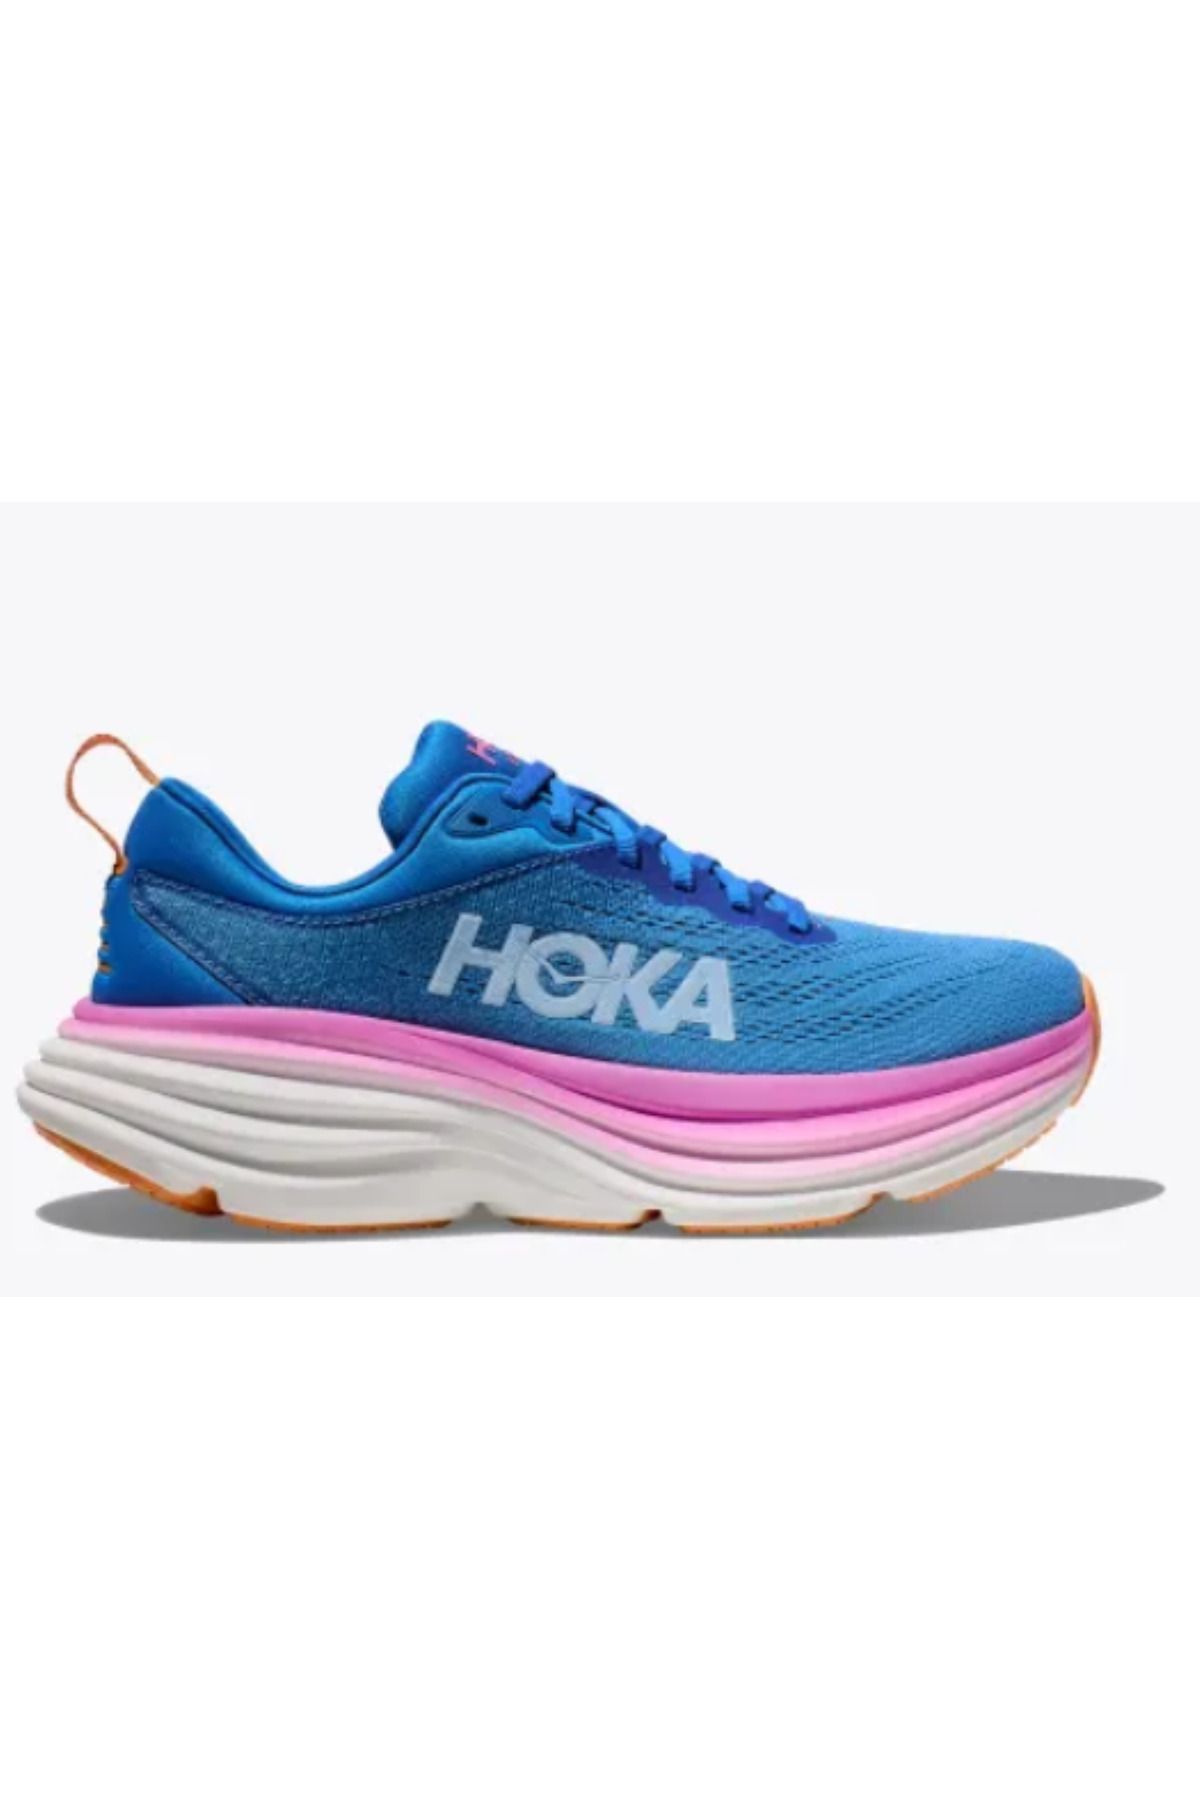 hoka Bondi 8 Kadın Mavi Spor Ayakkabı Sneaker(Yurtdışından)